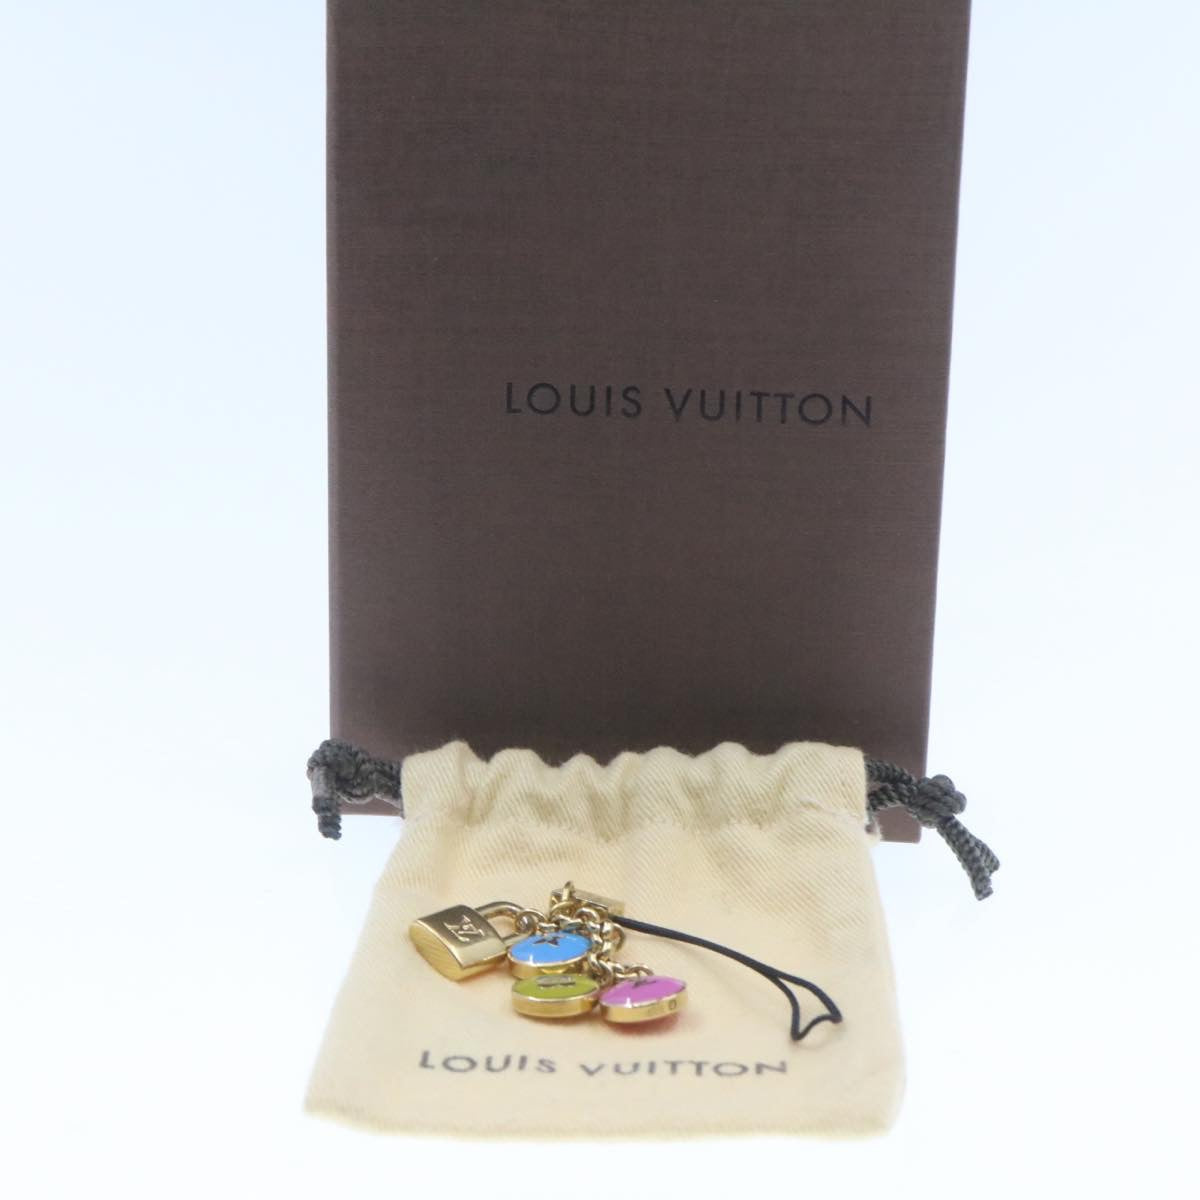 LOUIS VUITTON Pastille Bag Charm Gold Multicolor LV Auth am286b